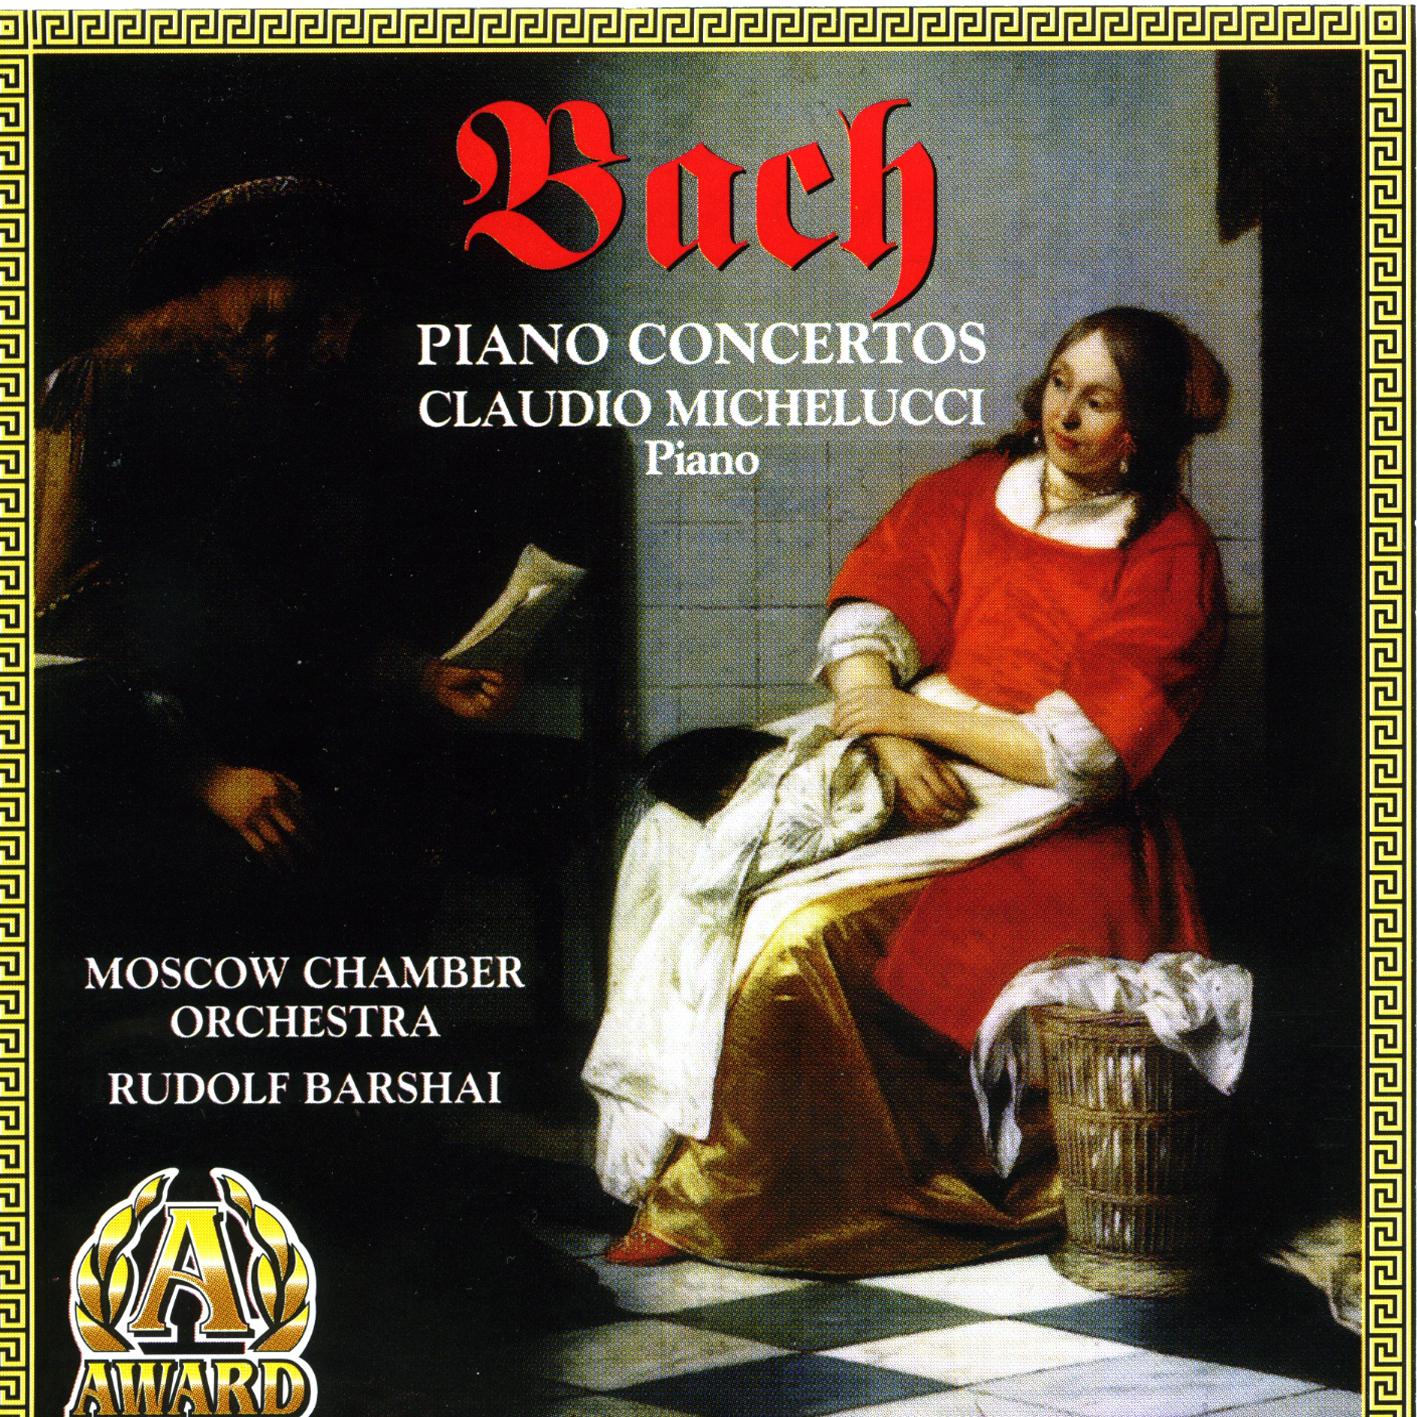 Piano Concerto In A, BWV 1055: Allegro, Larghetto, Allegro